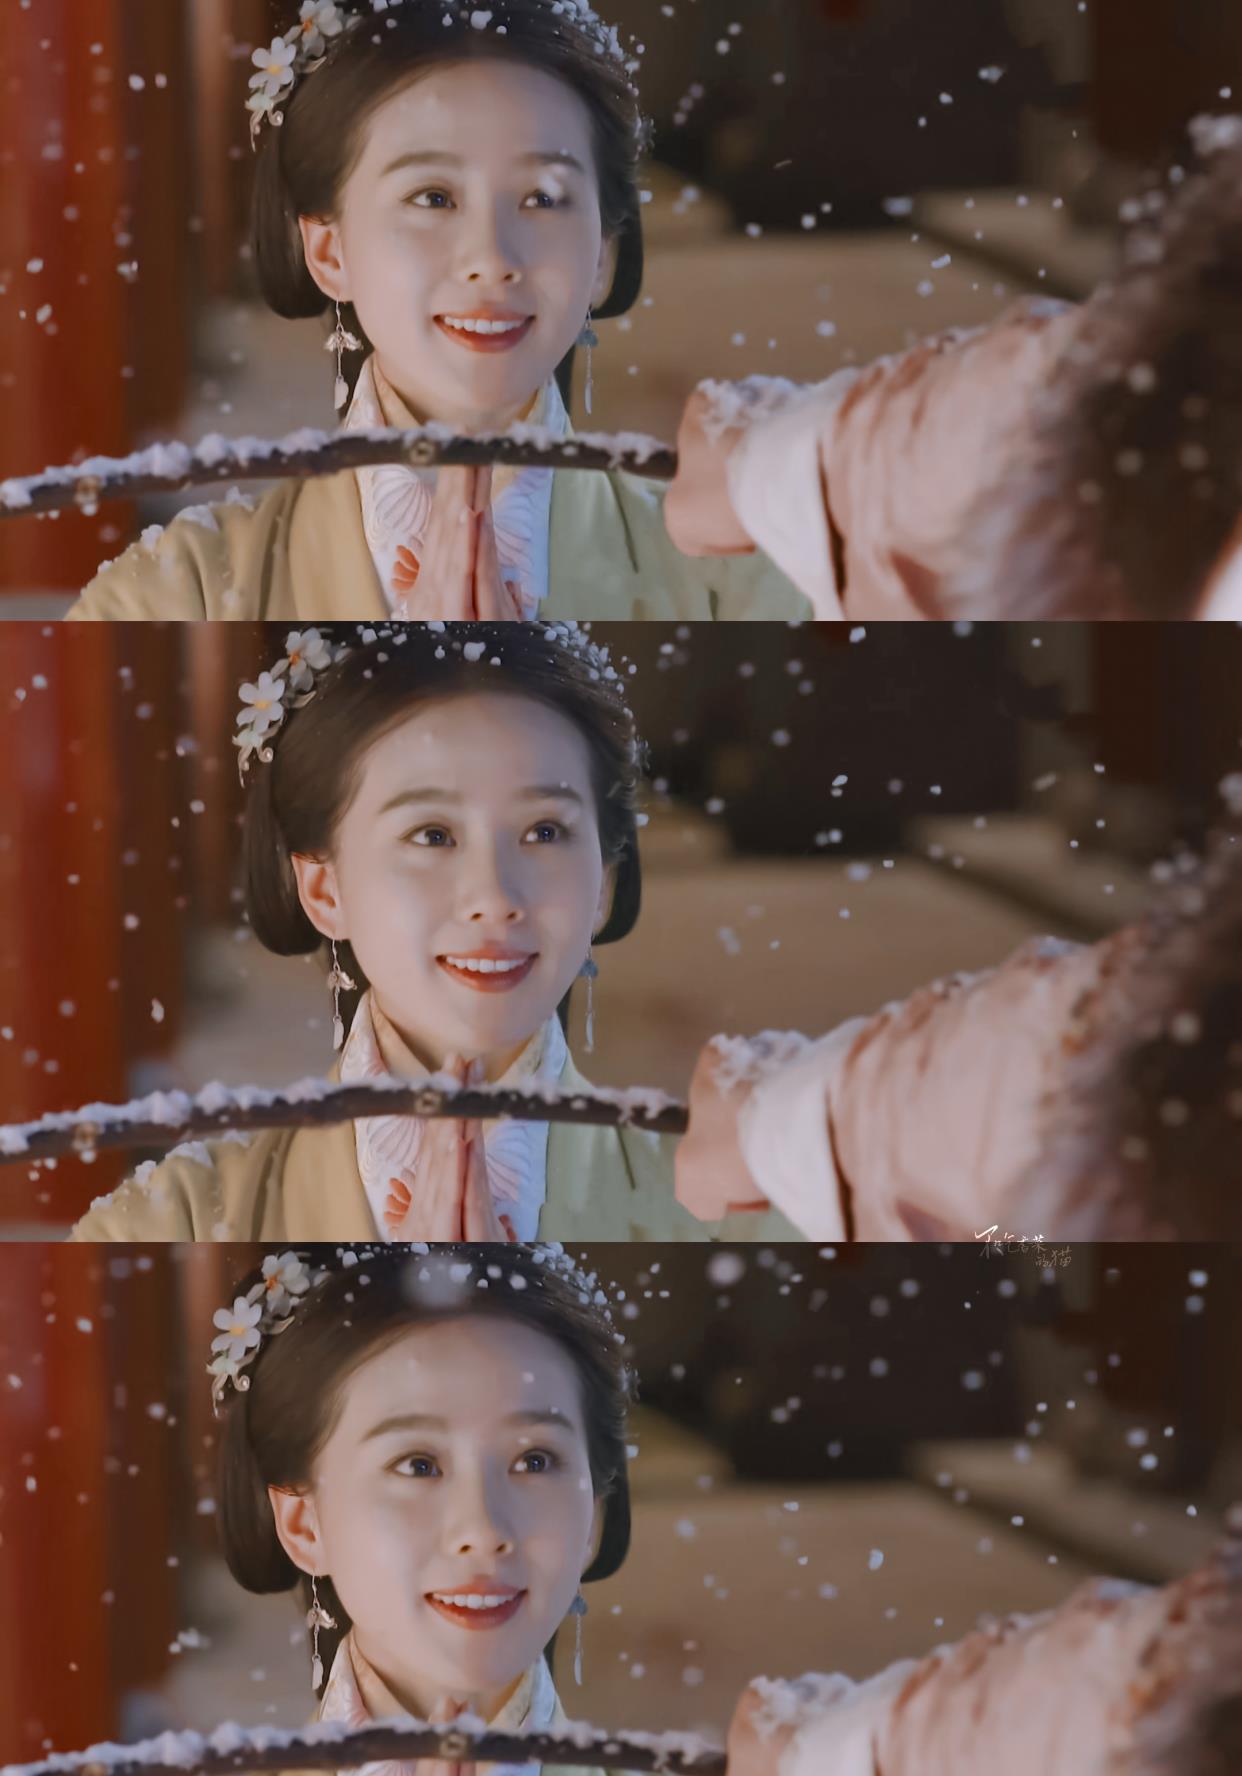 刘诗诗真的可以称得上是和雪景最配的演员,没有之一!